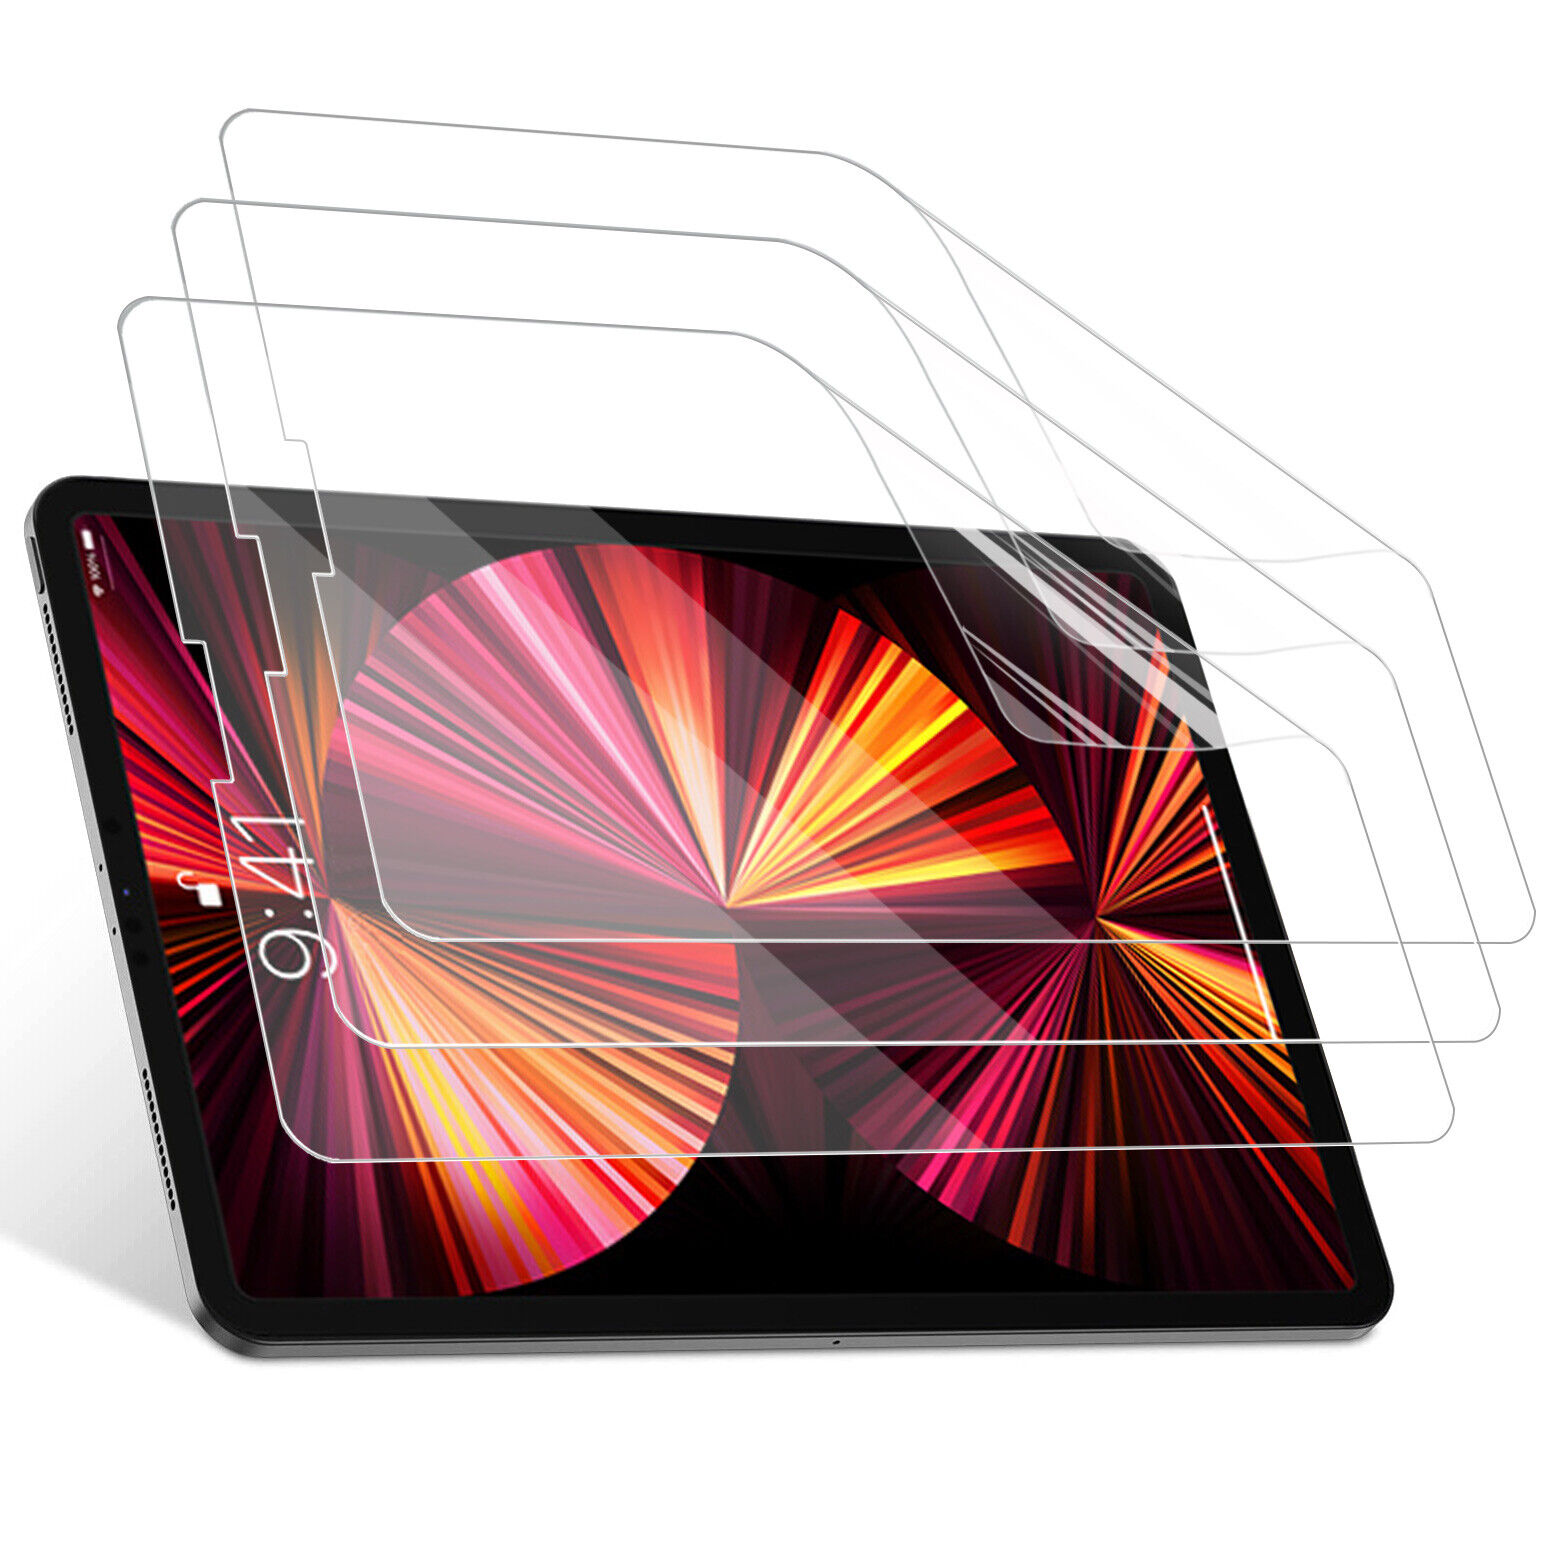 Anti-Glare & Matte Screen Protector for 0ld 9.7inch iPad 2nd./3rd./4th iPad Mini